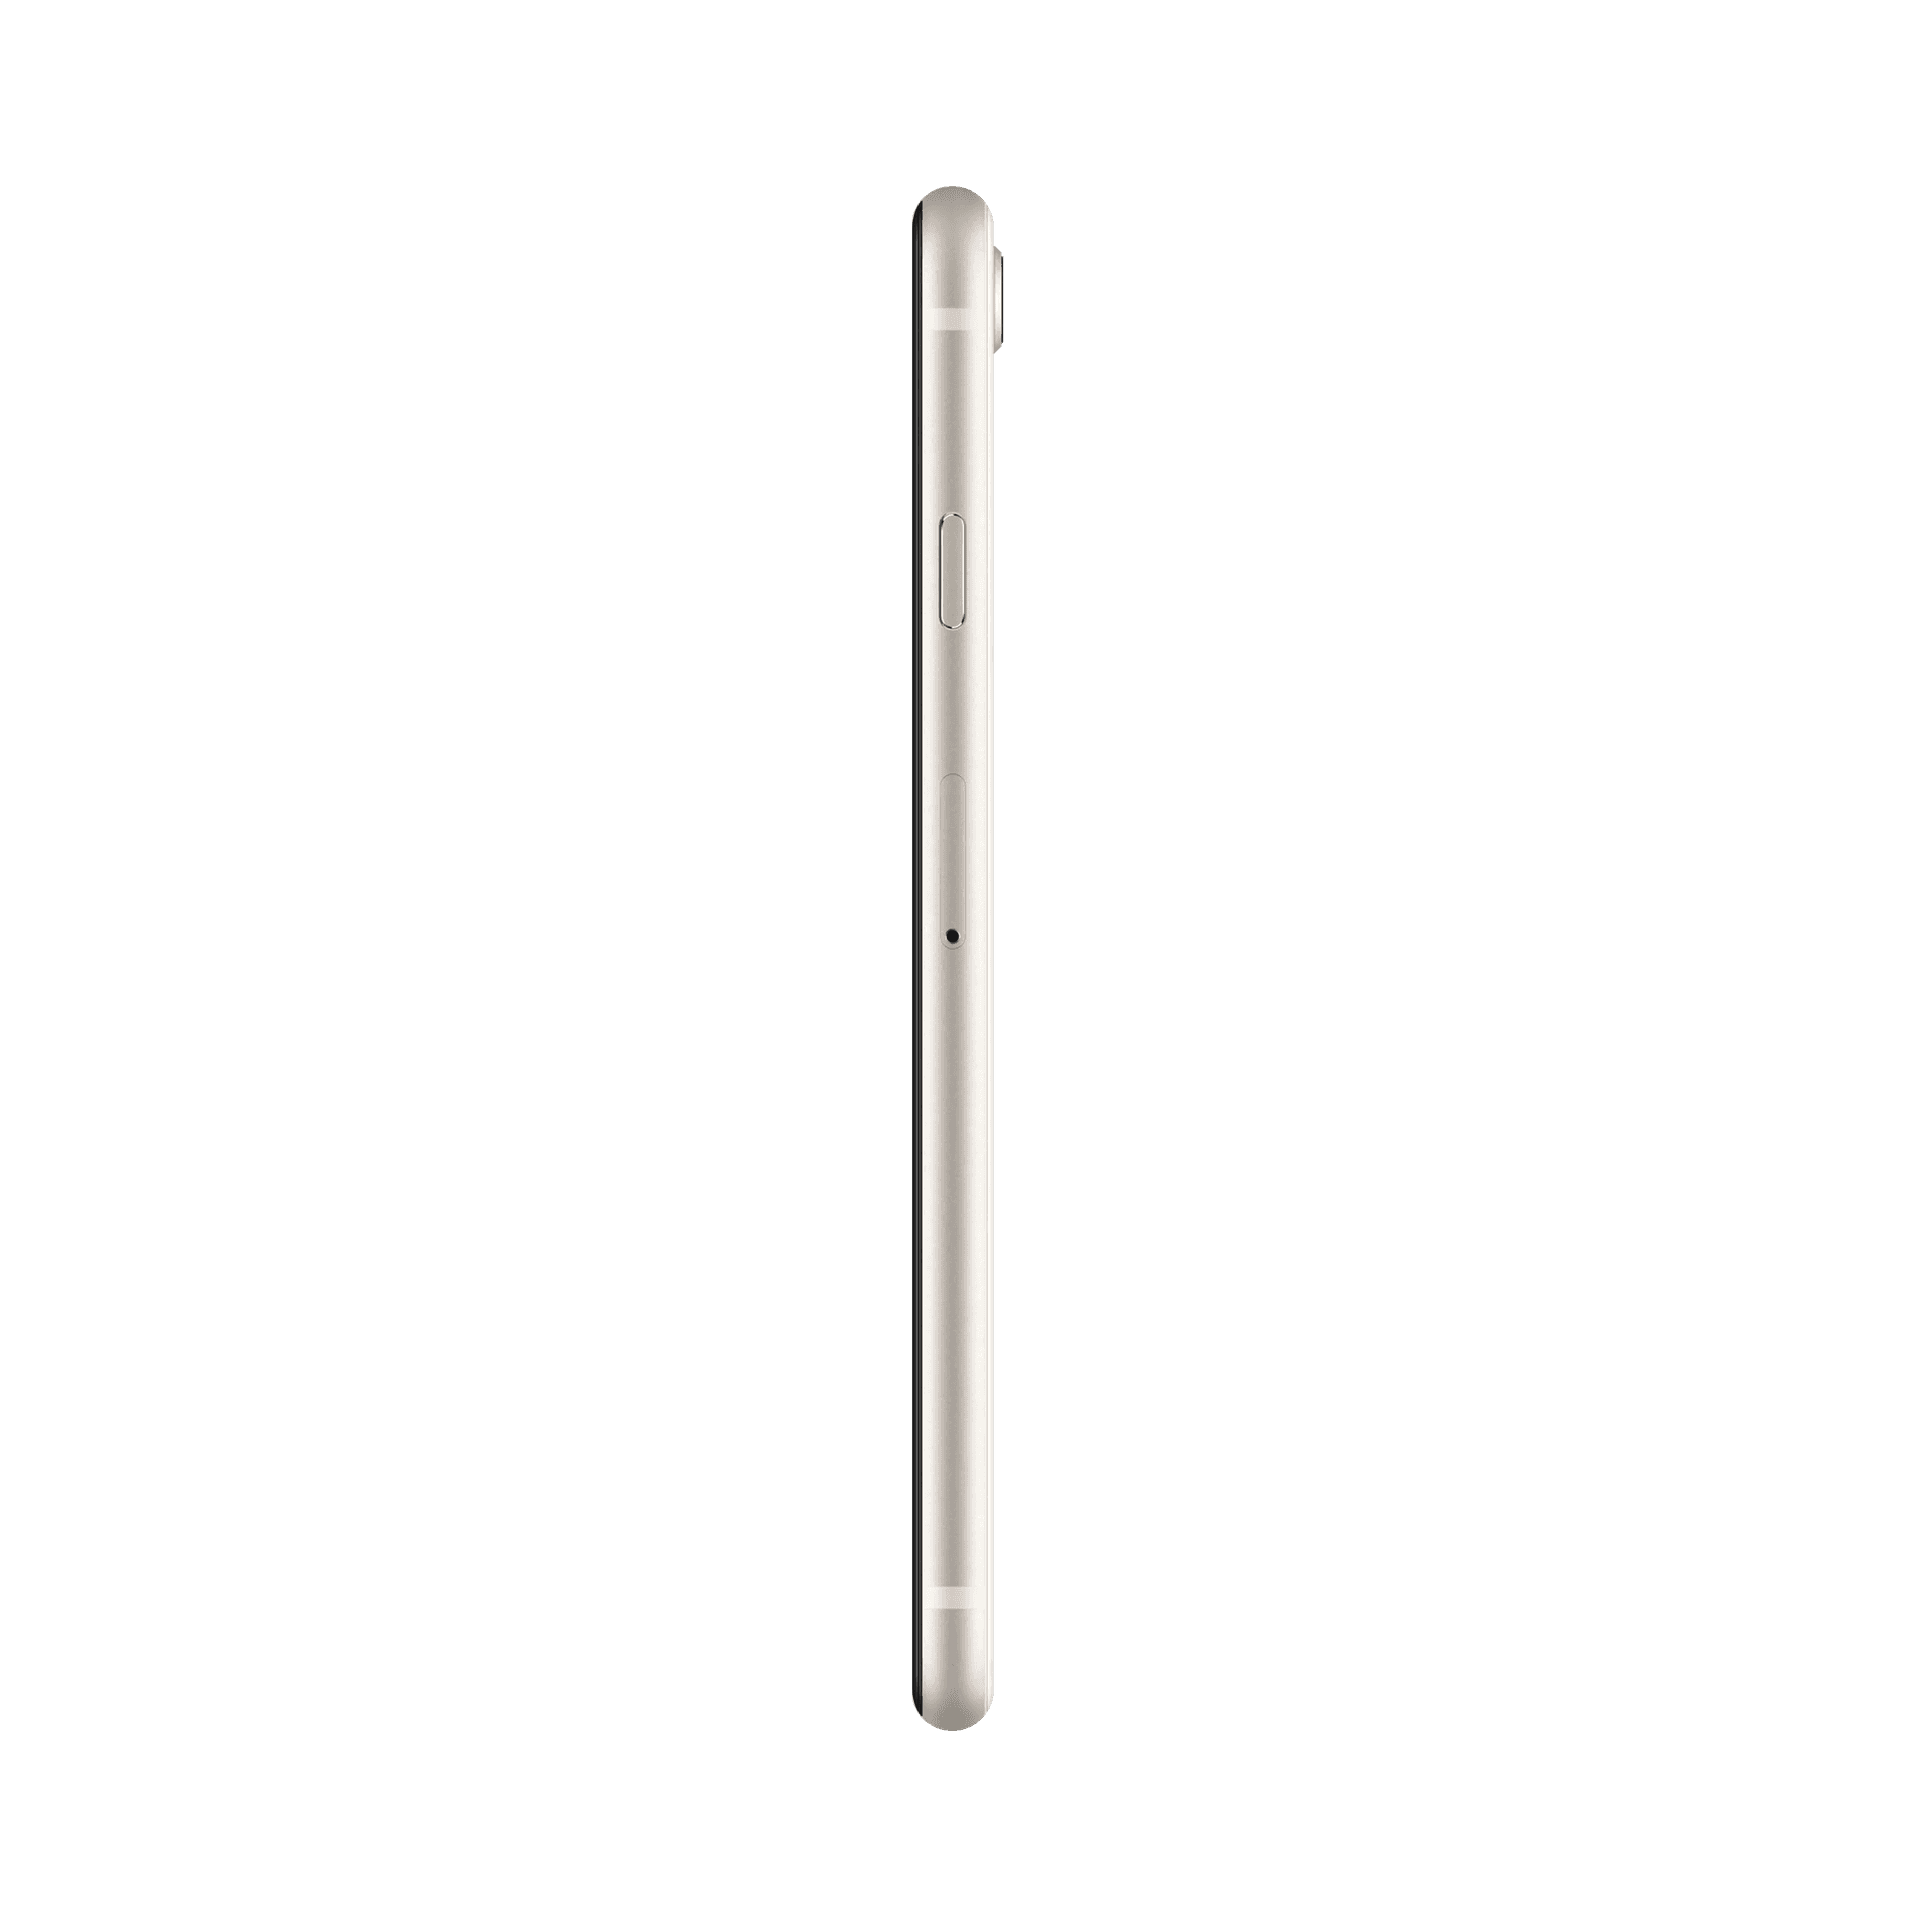 Apple iPhone SE 2020 - 256 GB - Beyaz